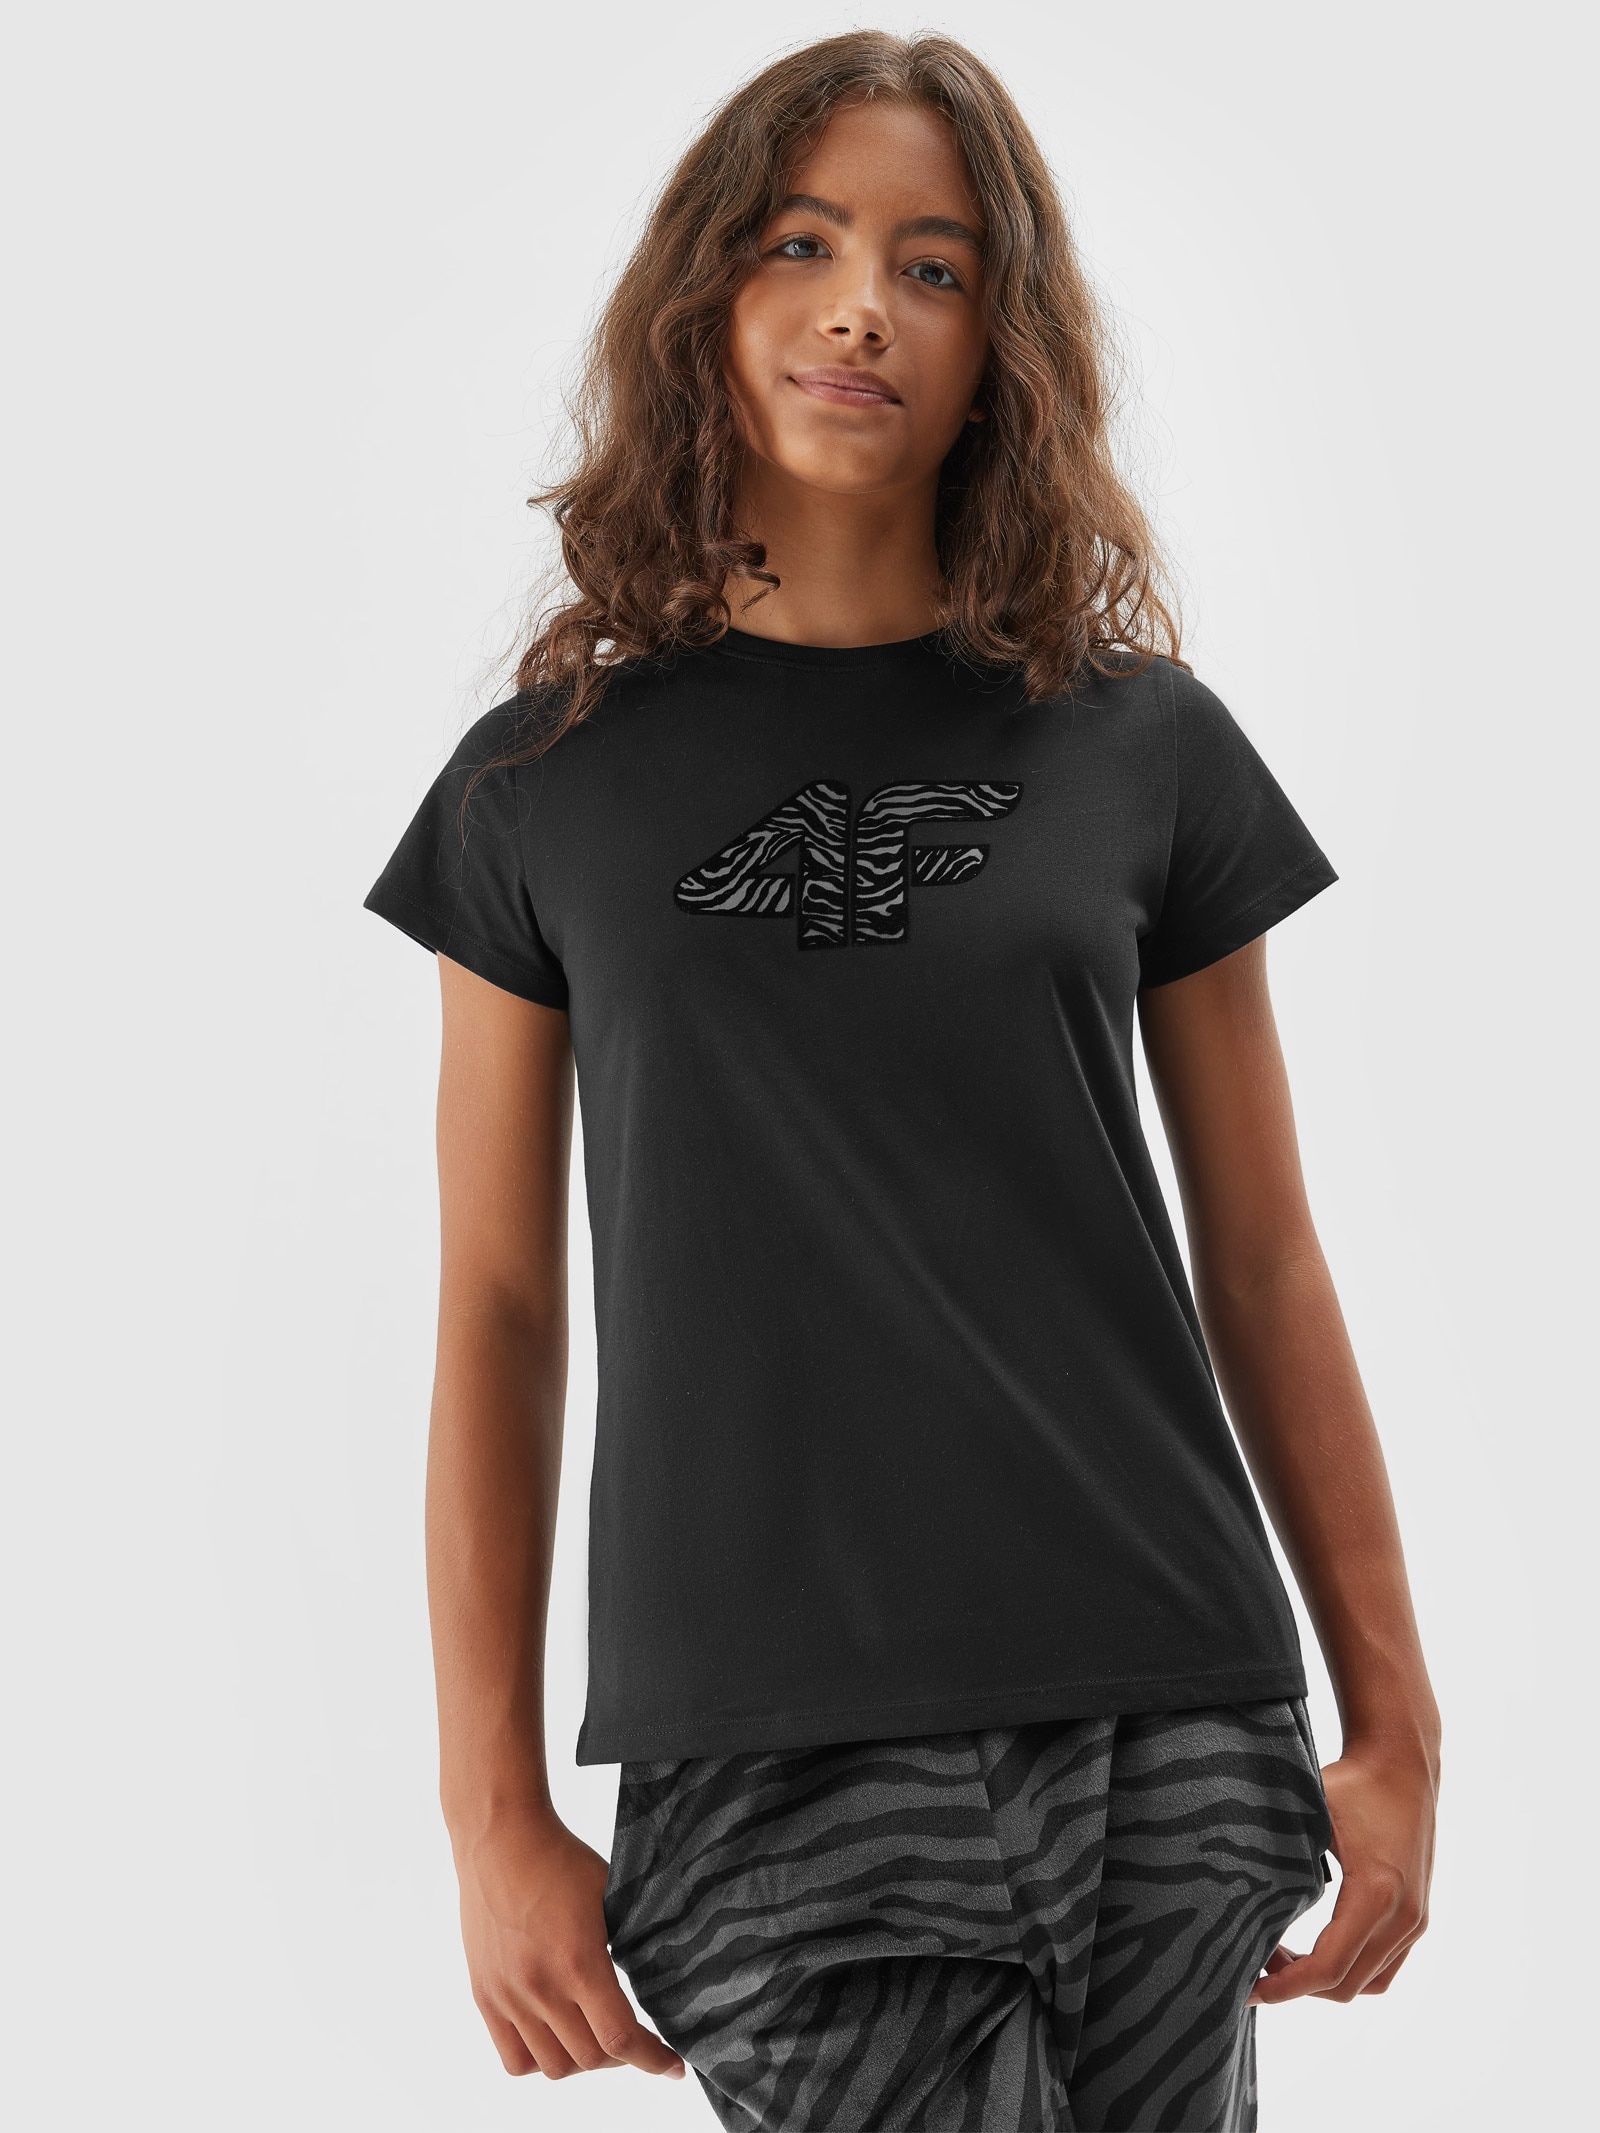 Dívčí tričko s potiskem - černé